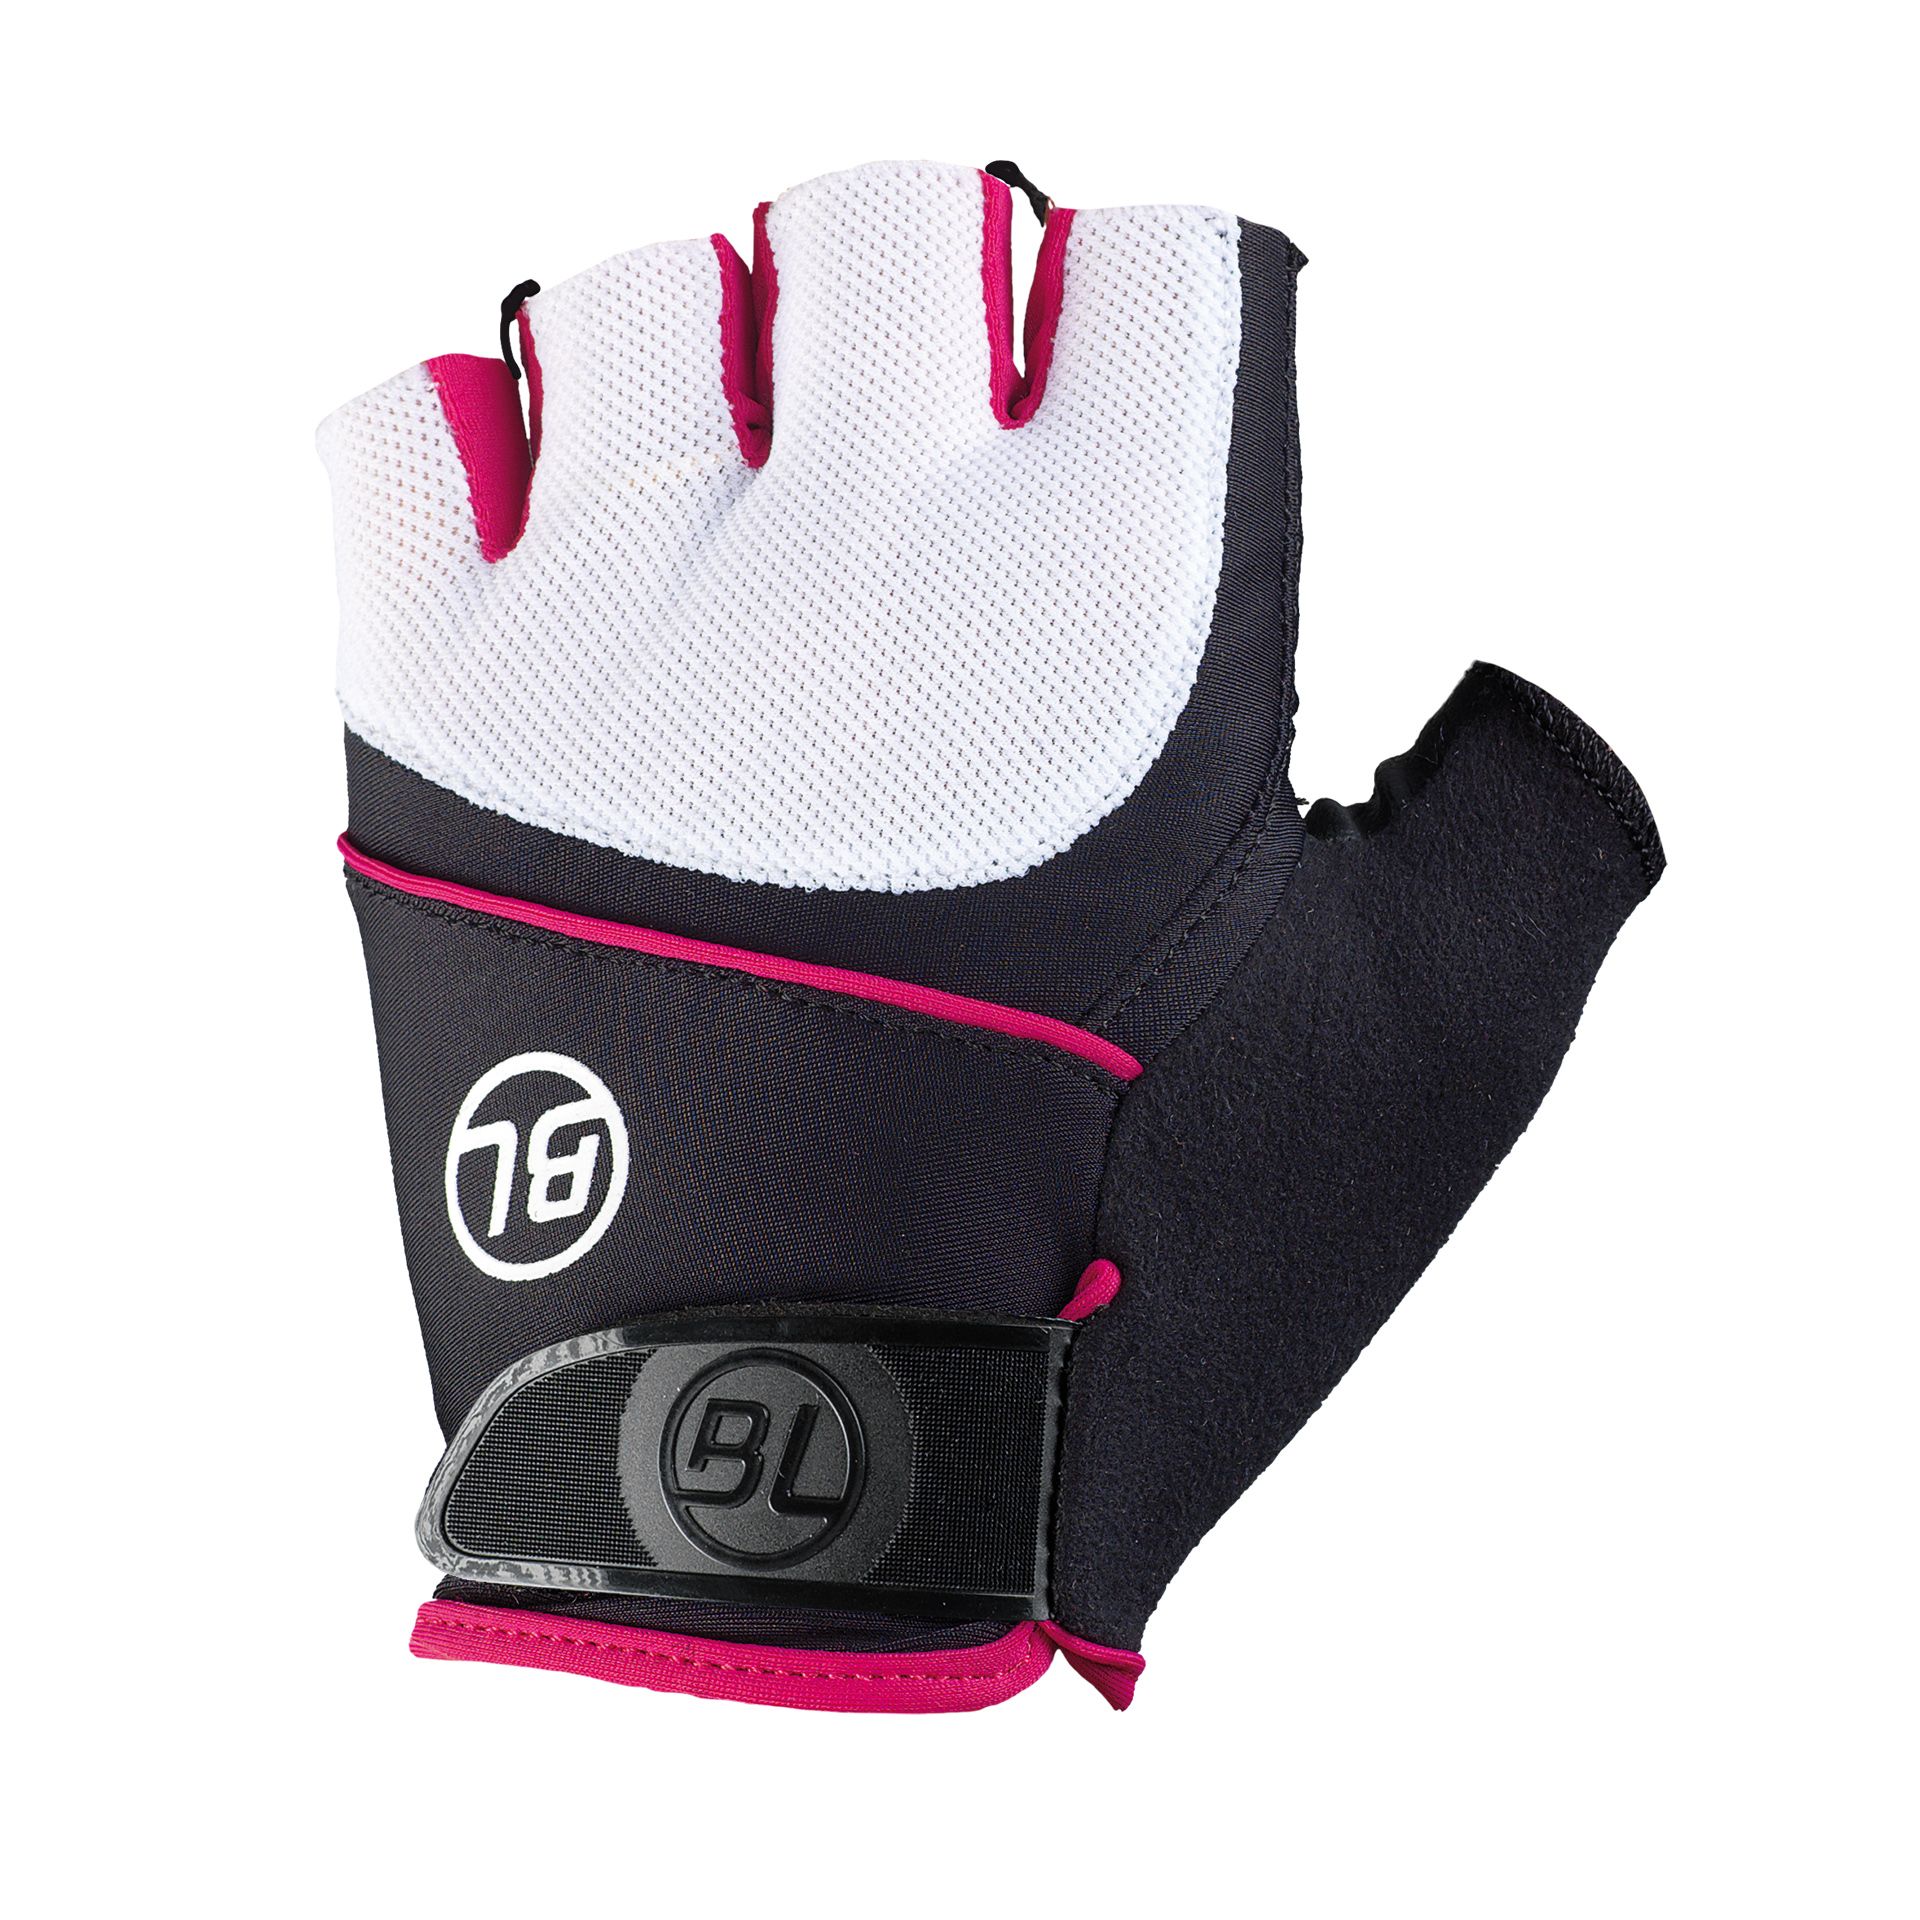 Перчатки Bicycle Line GUIDA, женские, без пальцев, черно-бело-розовые, размер M фото 